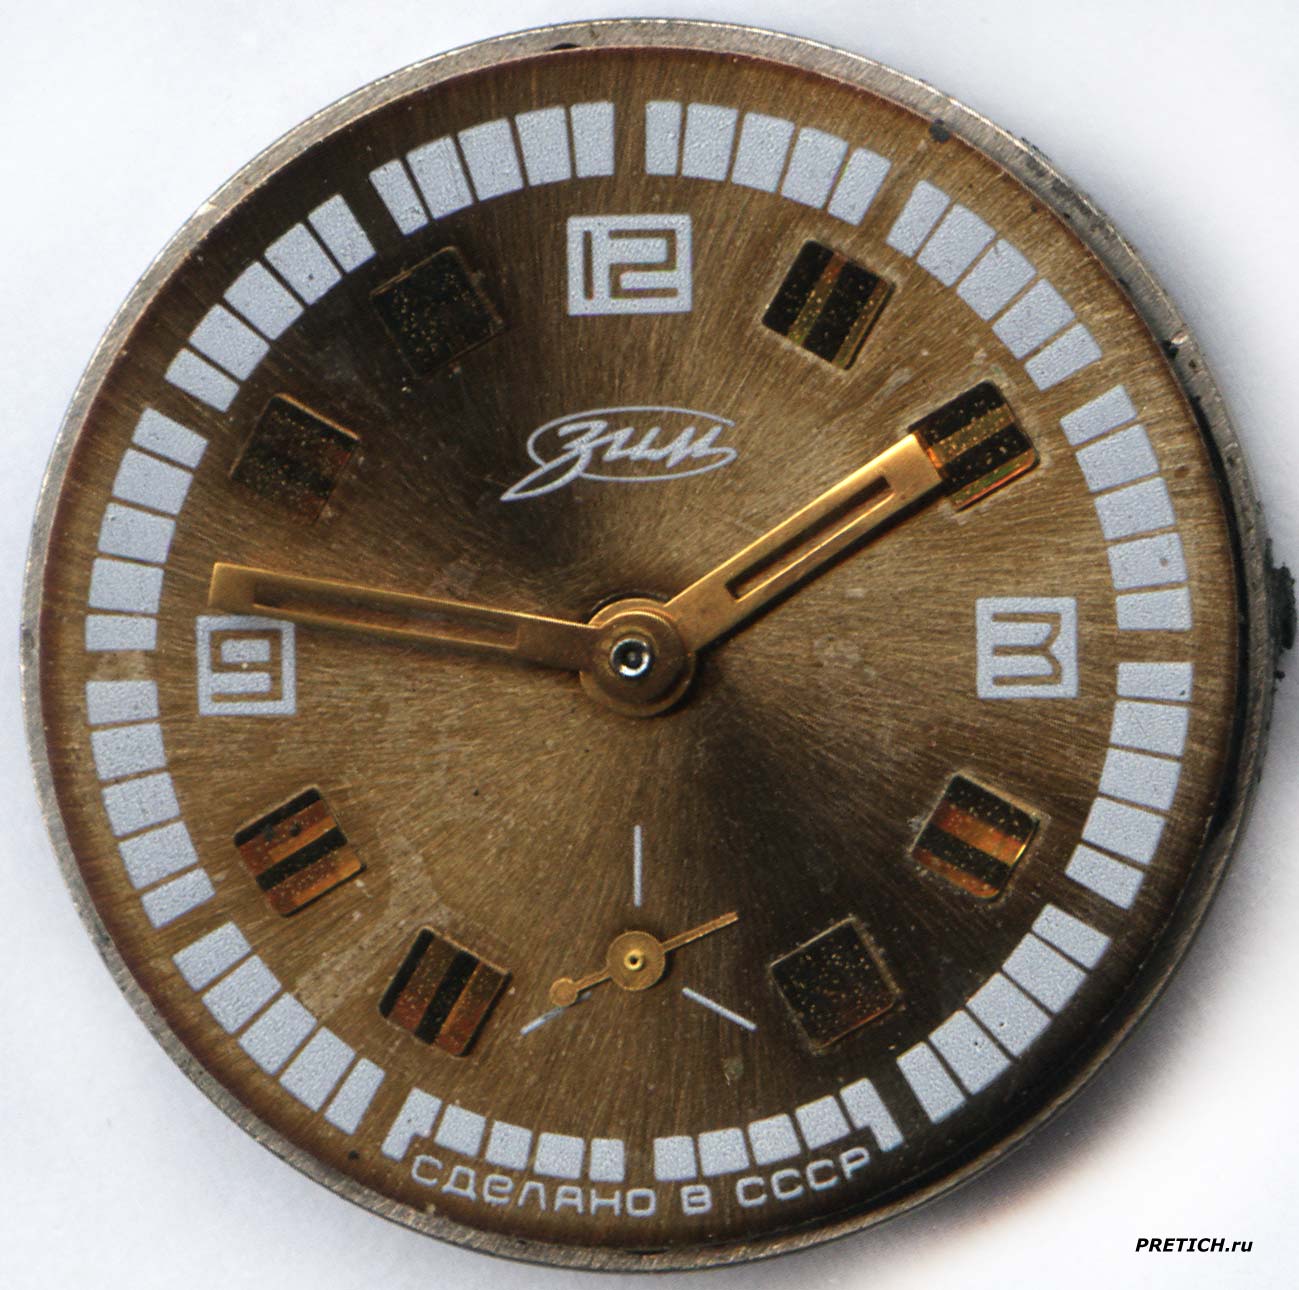 ЗИМ 2602 часы СССР, циферблат, полное описание